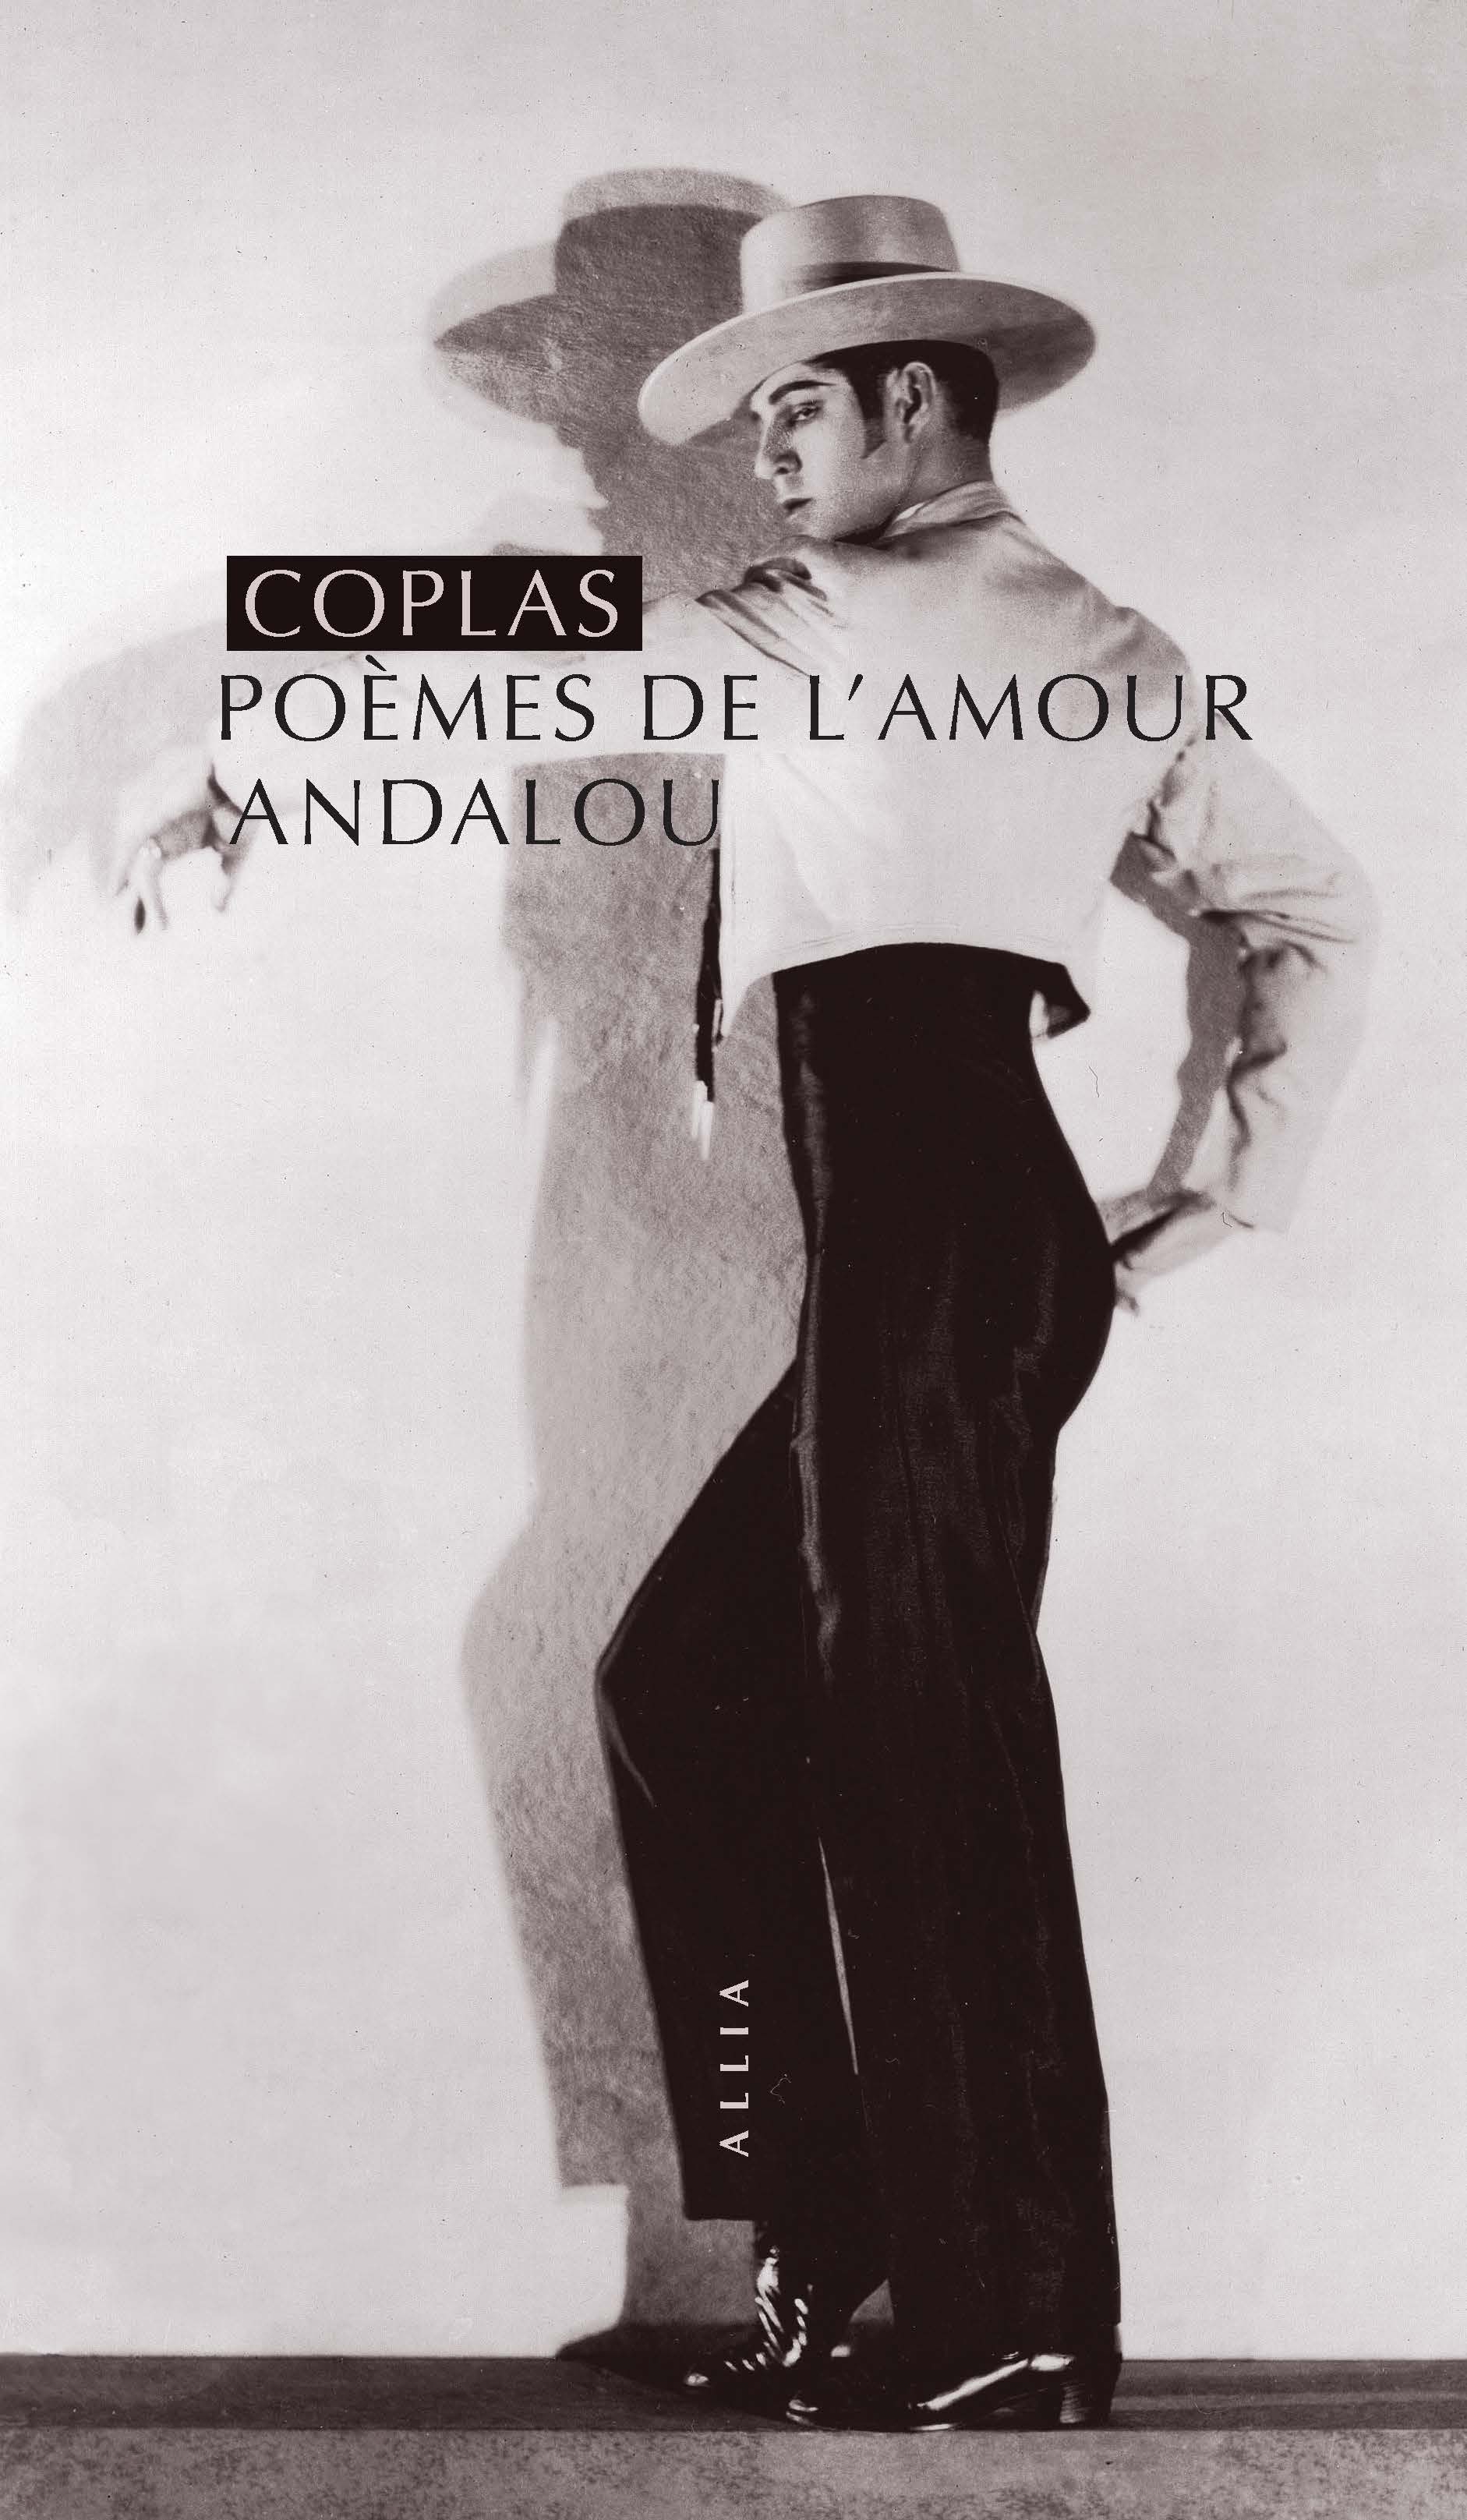 Coplas, poème de l'amour andalou (édition de poche)